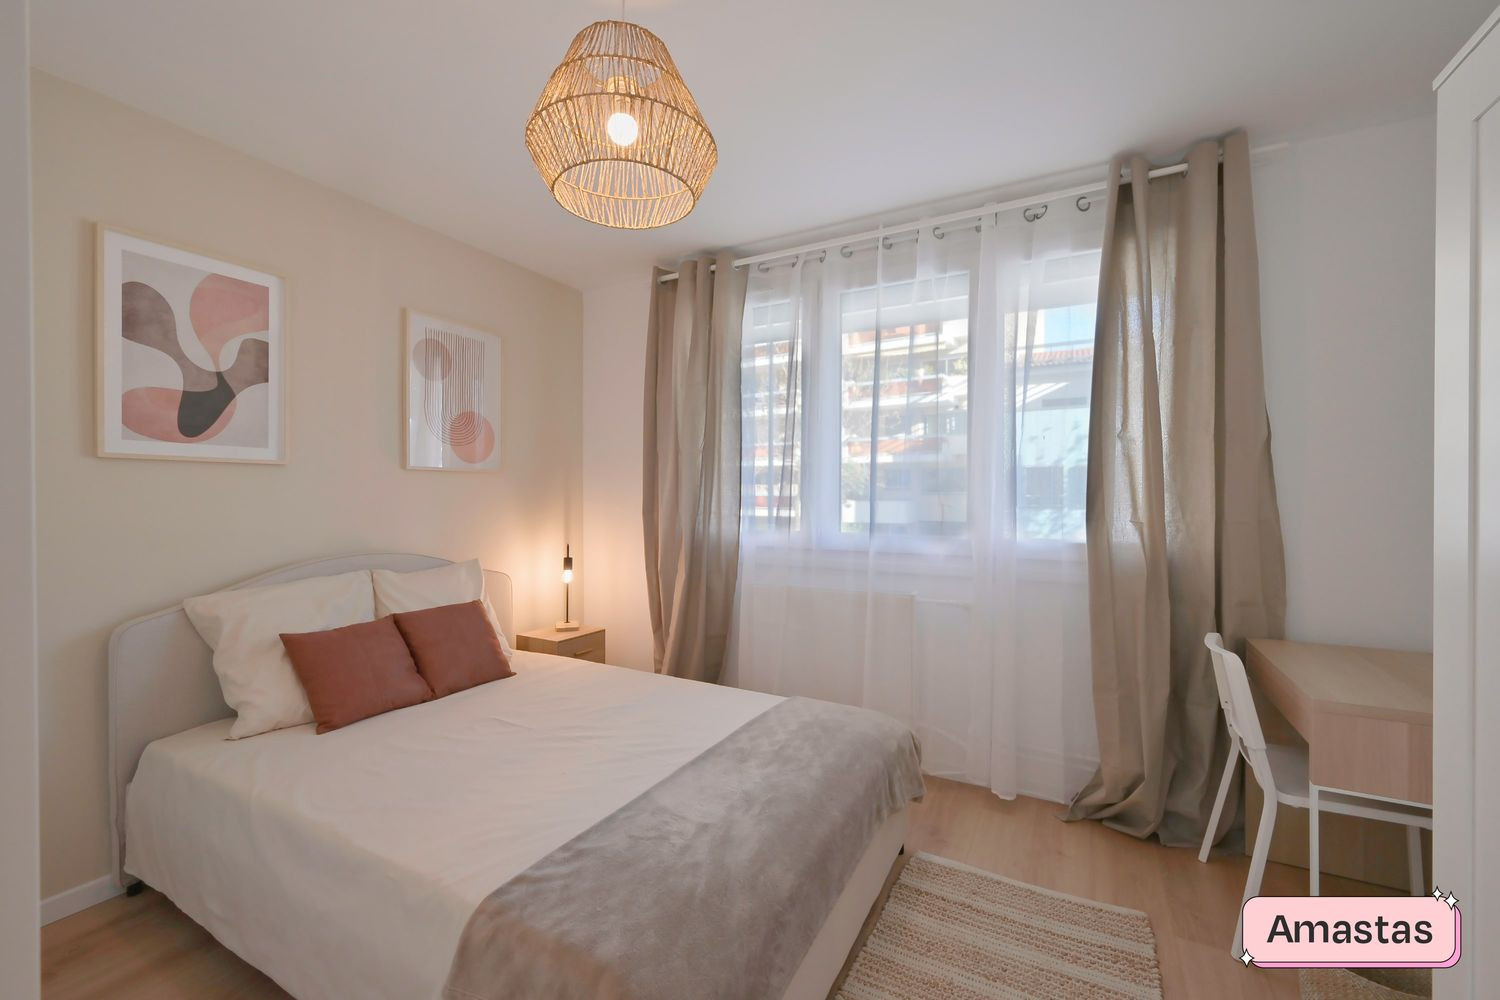 
                                                Colocation
                                                 Deux chambres disponibles dans cette colocation de 4 chambres dans un appartement rénové à Valence - 426502